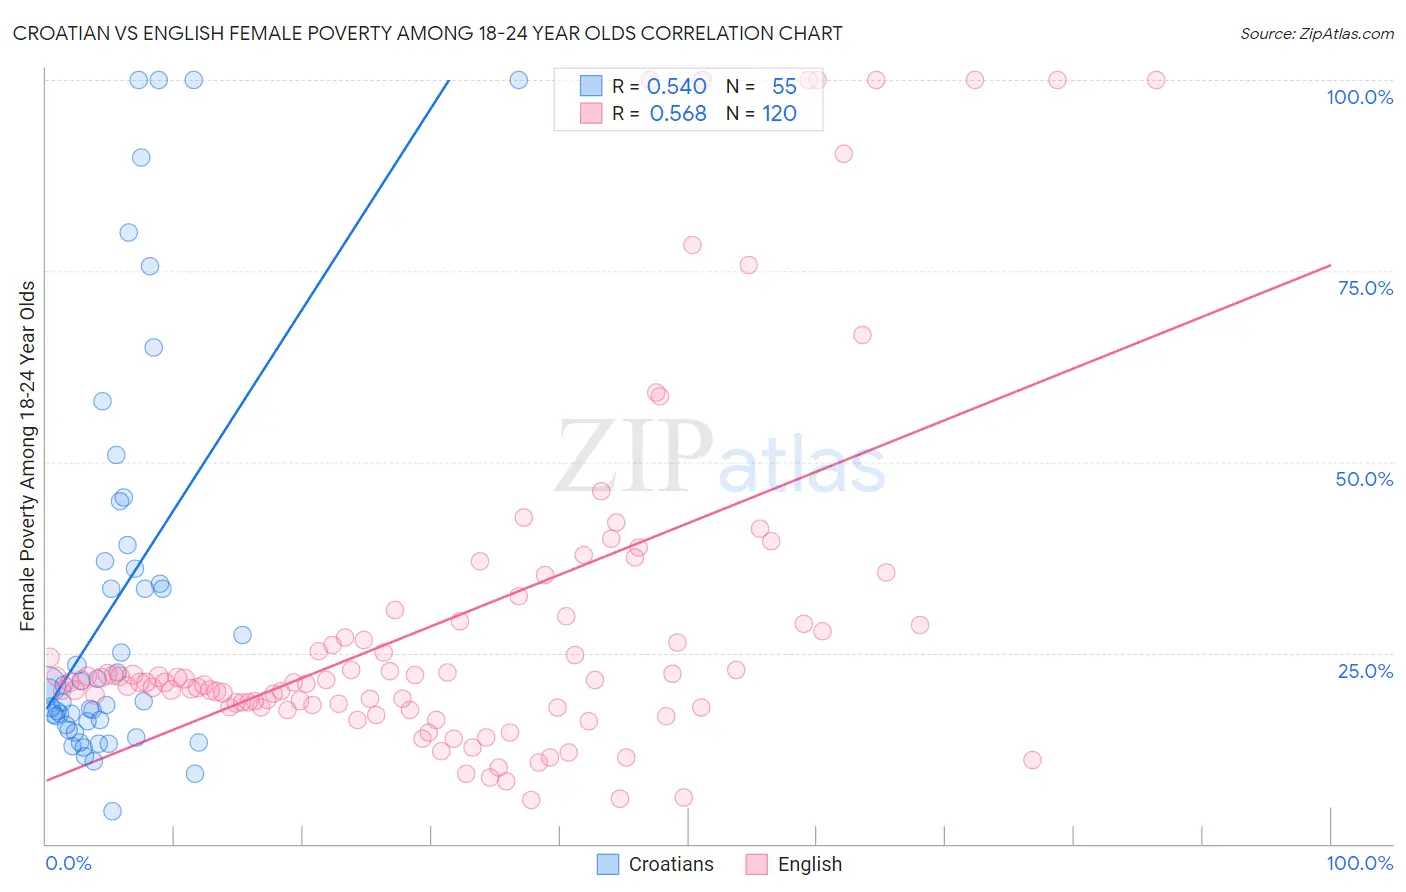 Croatian vs English Female Poverty Among 18-24 Year Olds